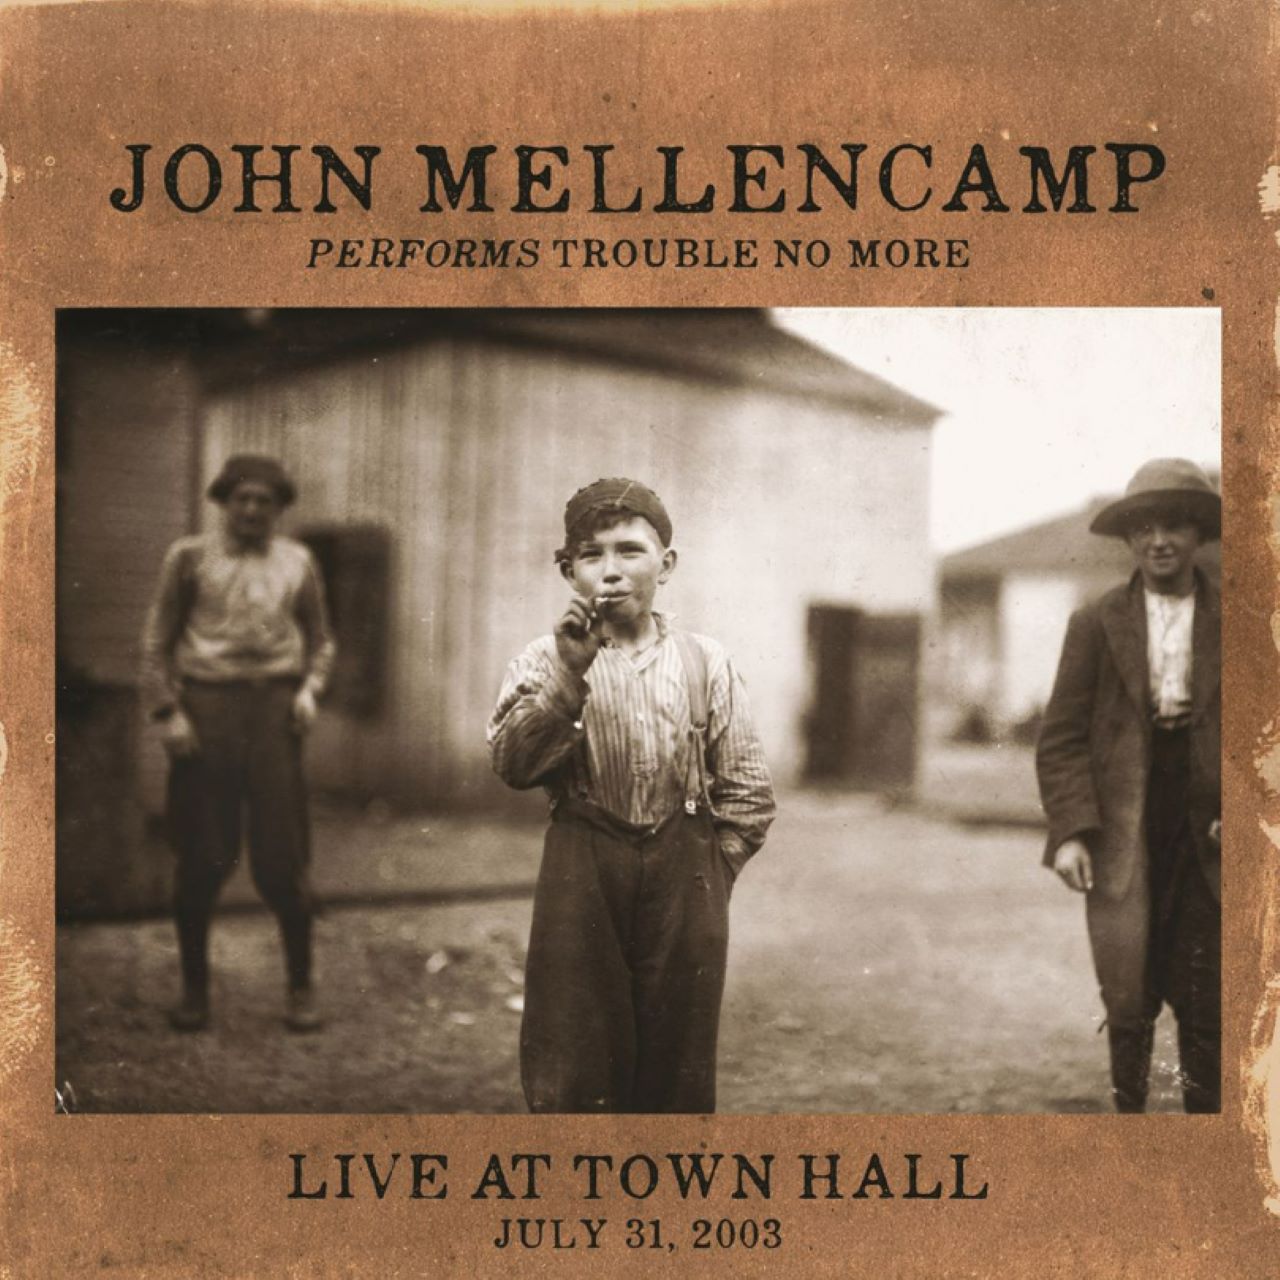 Recensione album di John Mellencamp - Live At Town Hall, July 31, 2003 a cura di Mauro Zambellini, su Thelongjourney.it